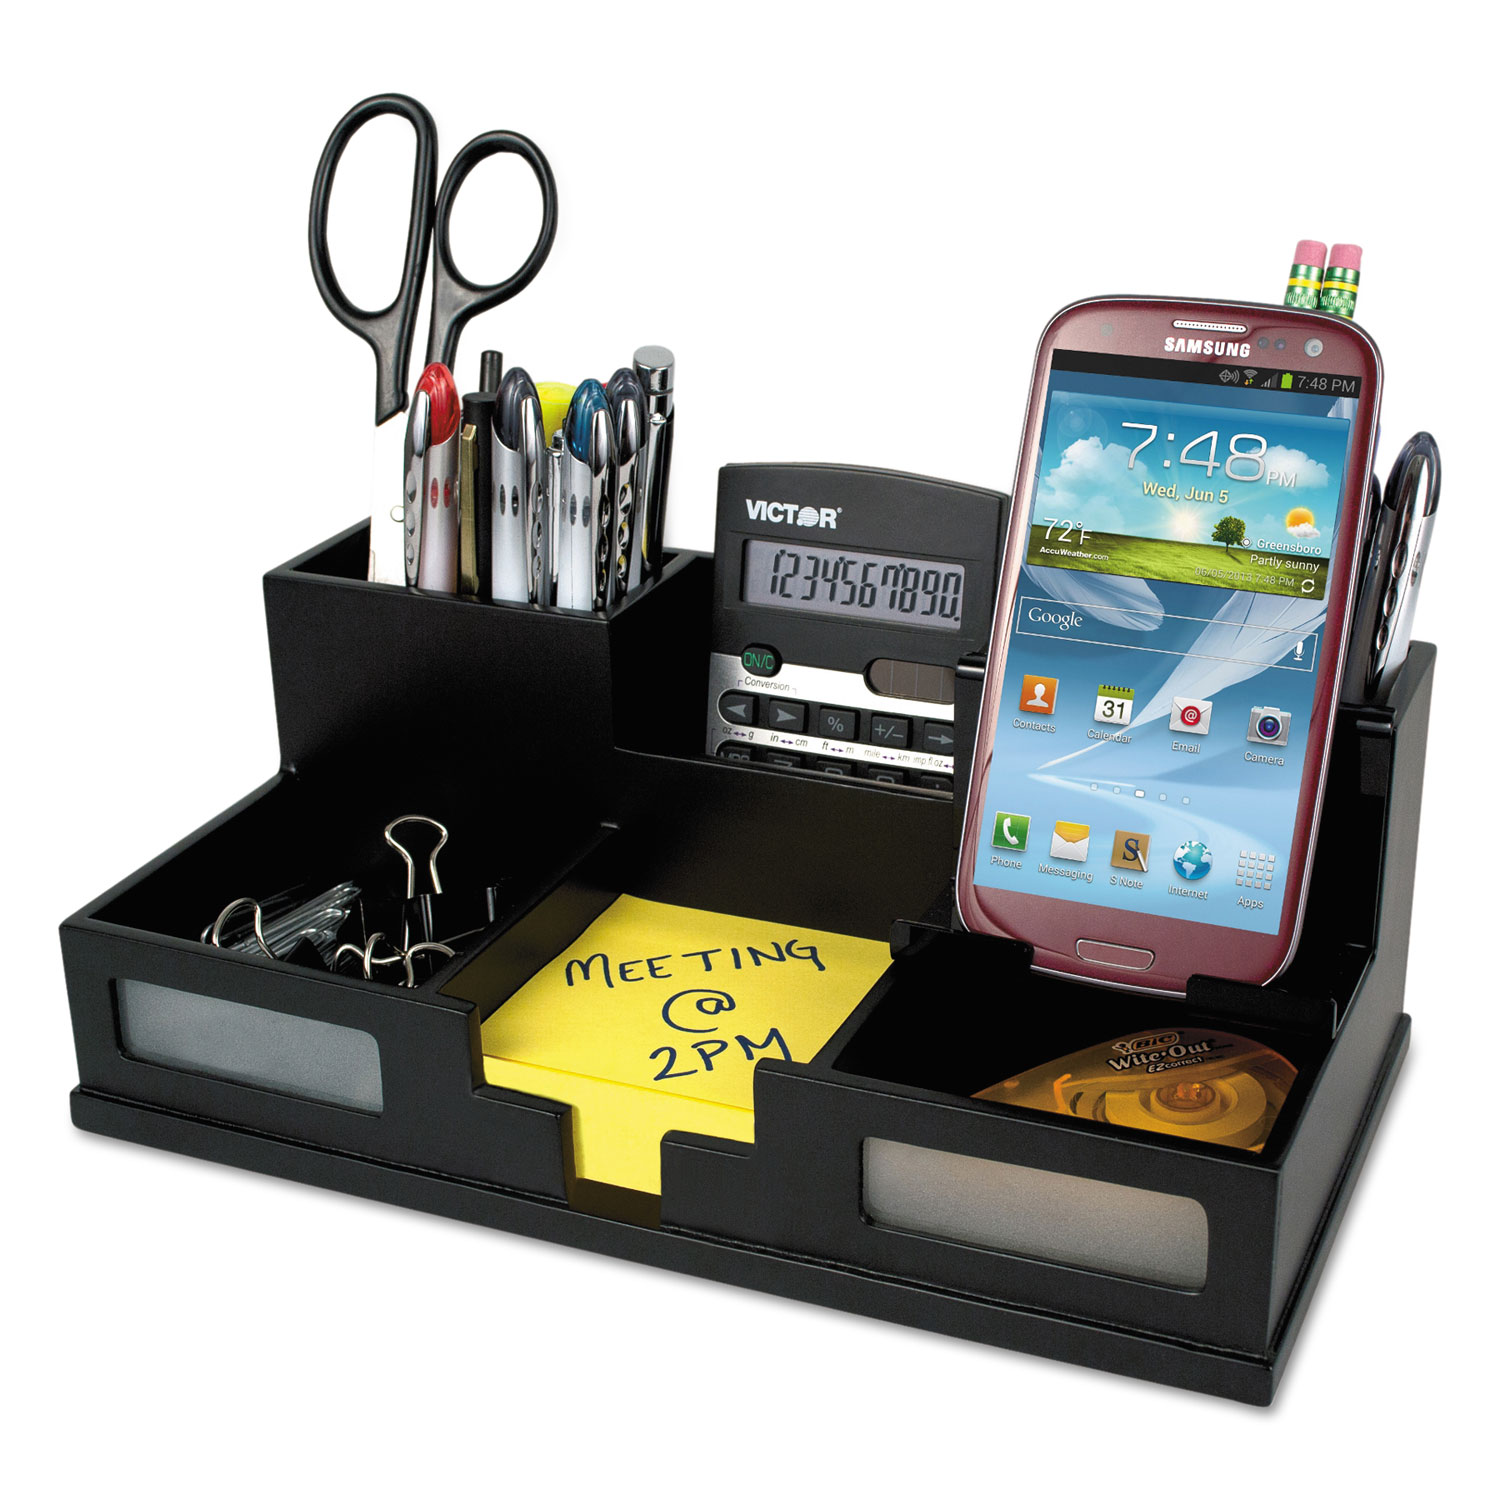 Midnight Black Desk Organizer with Smartphone Holder, 10 1/2 x 5 1/2 x 4, Wood